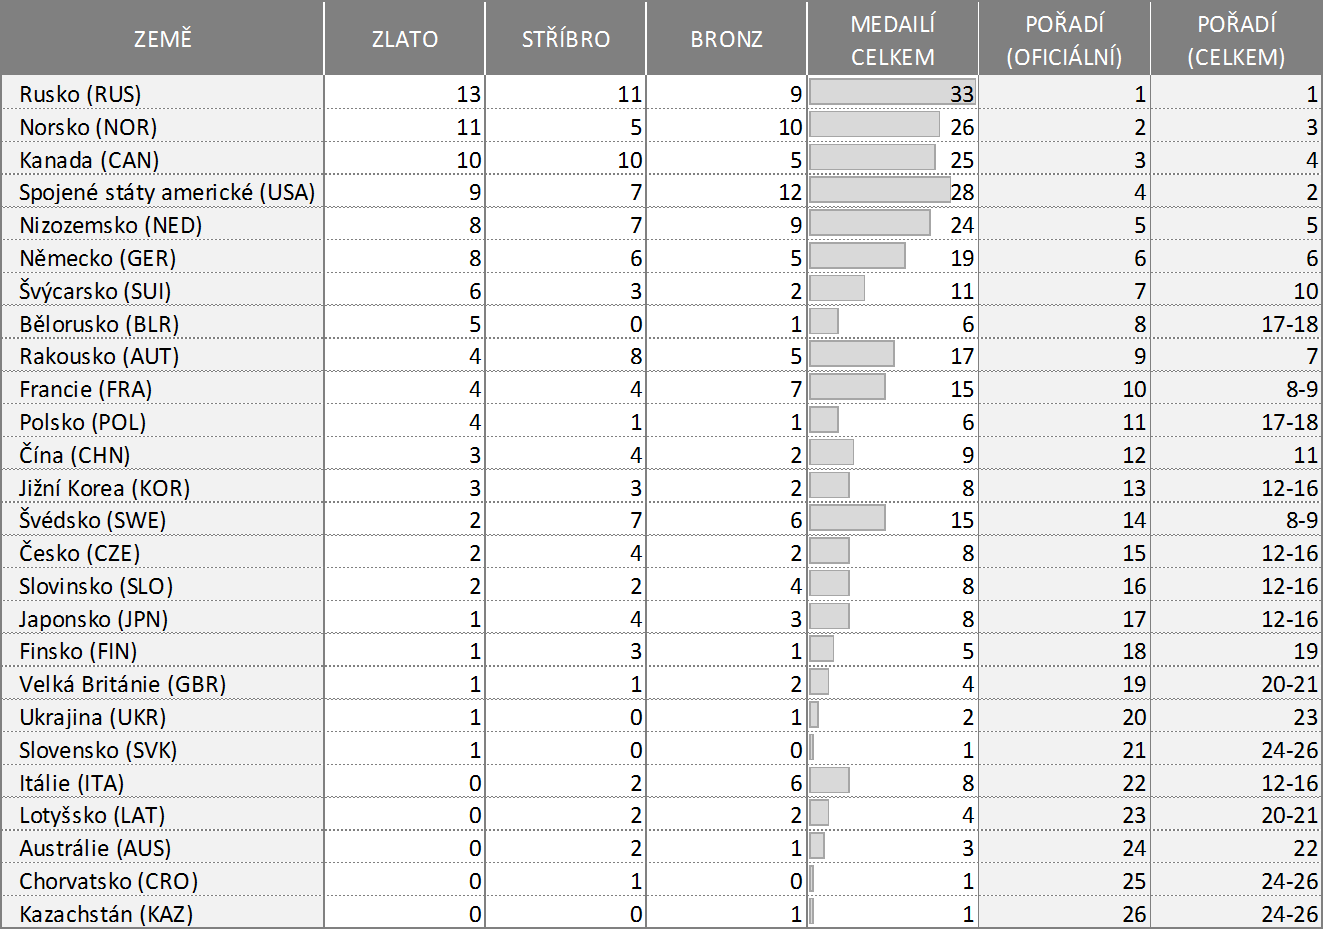 Medailové pořadí zemí na ZOH 2014 - oficiální a podle celkového počtu medailí.